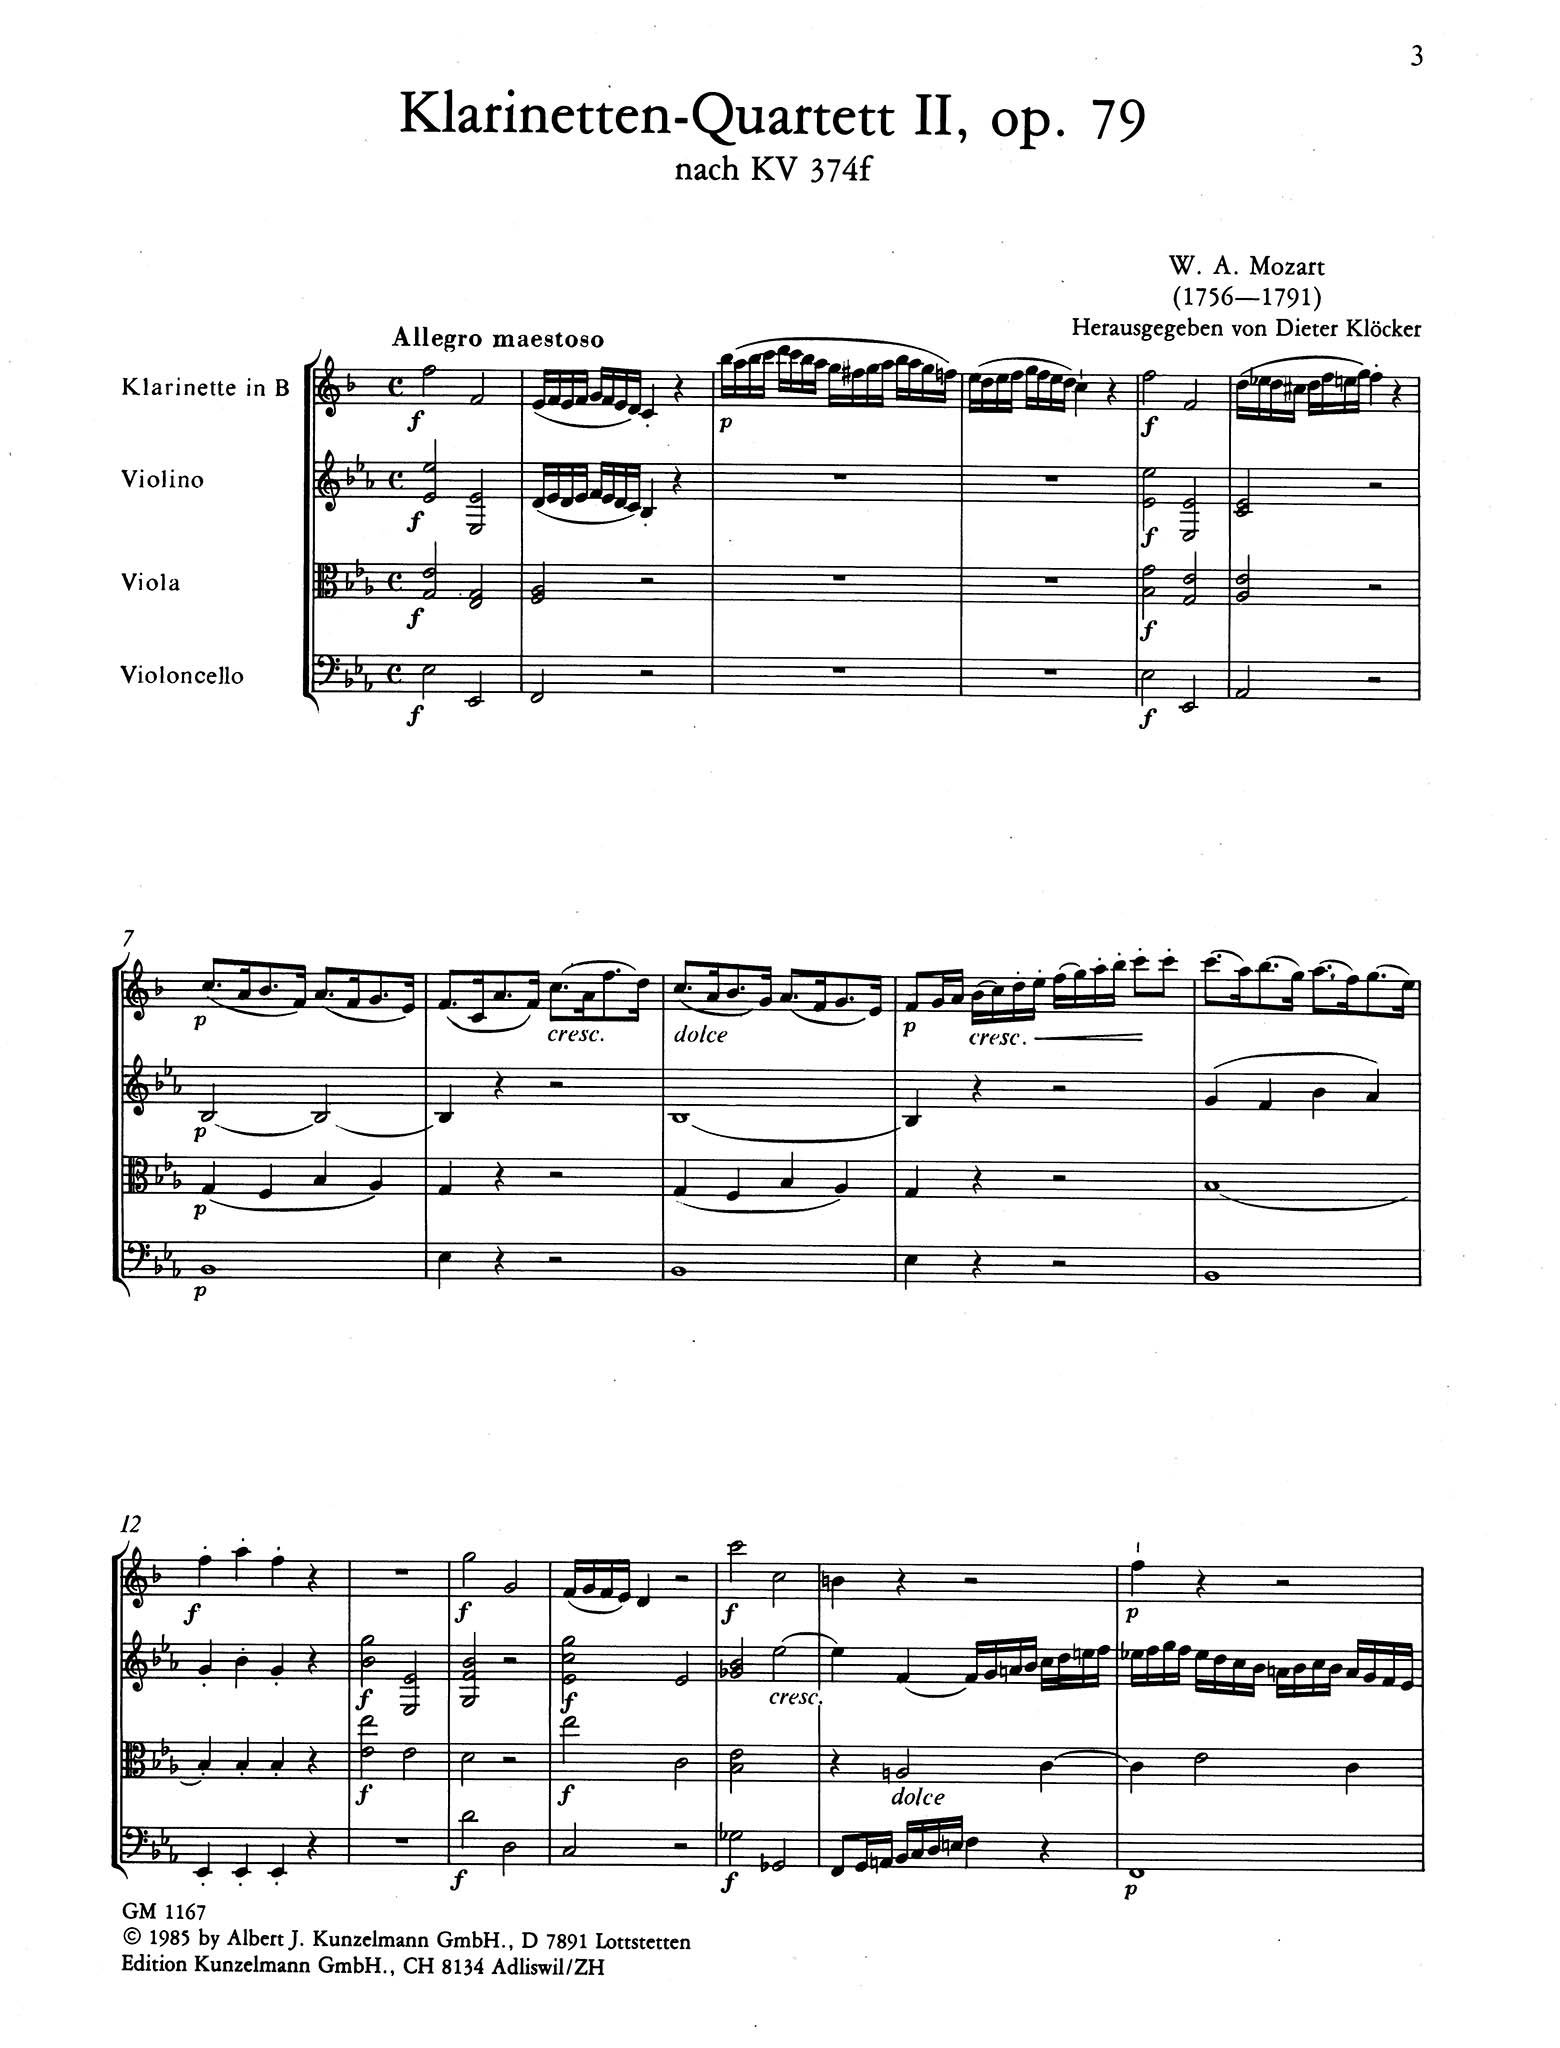 Violin Sonata in E-Flat Major, K. 380/374f - Movement 1